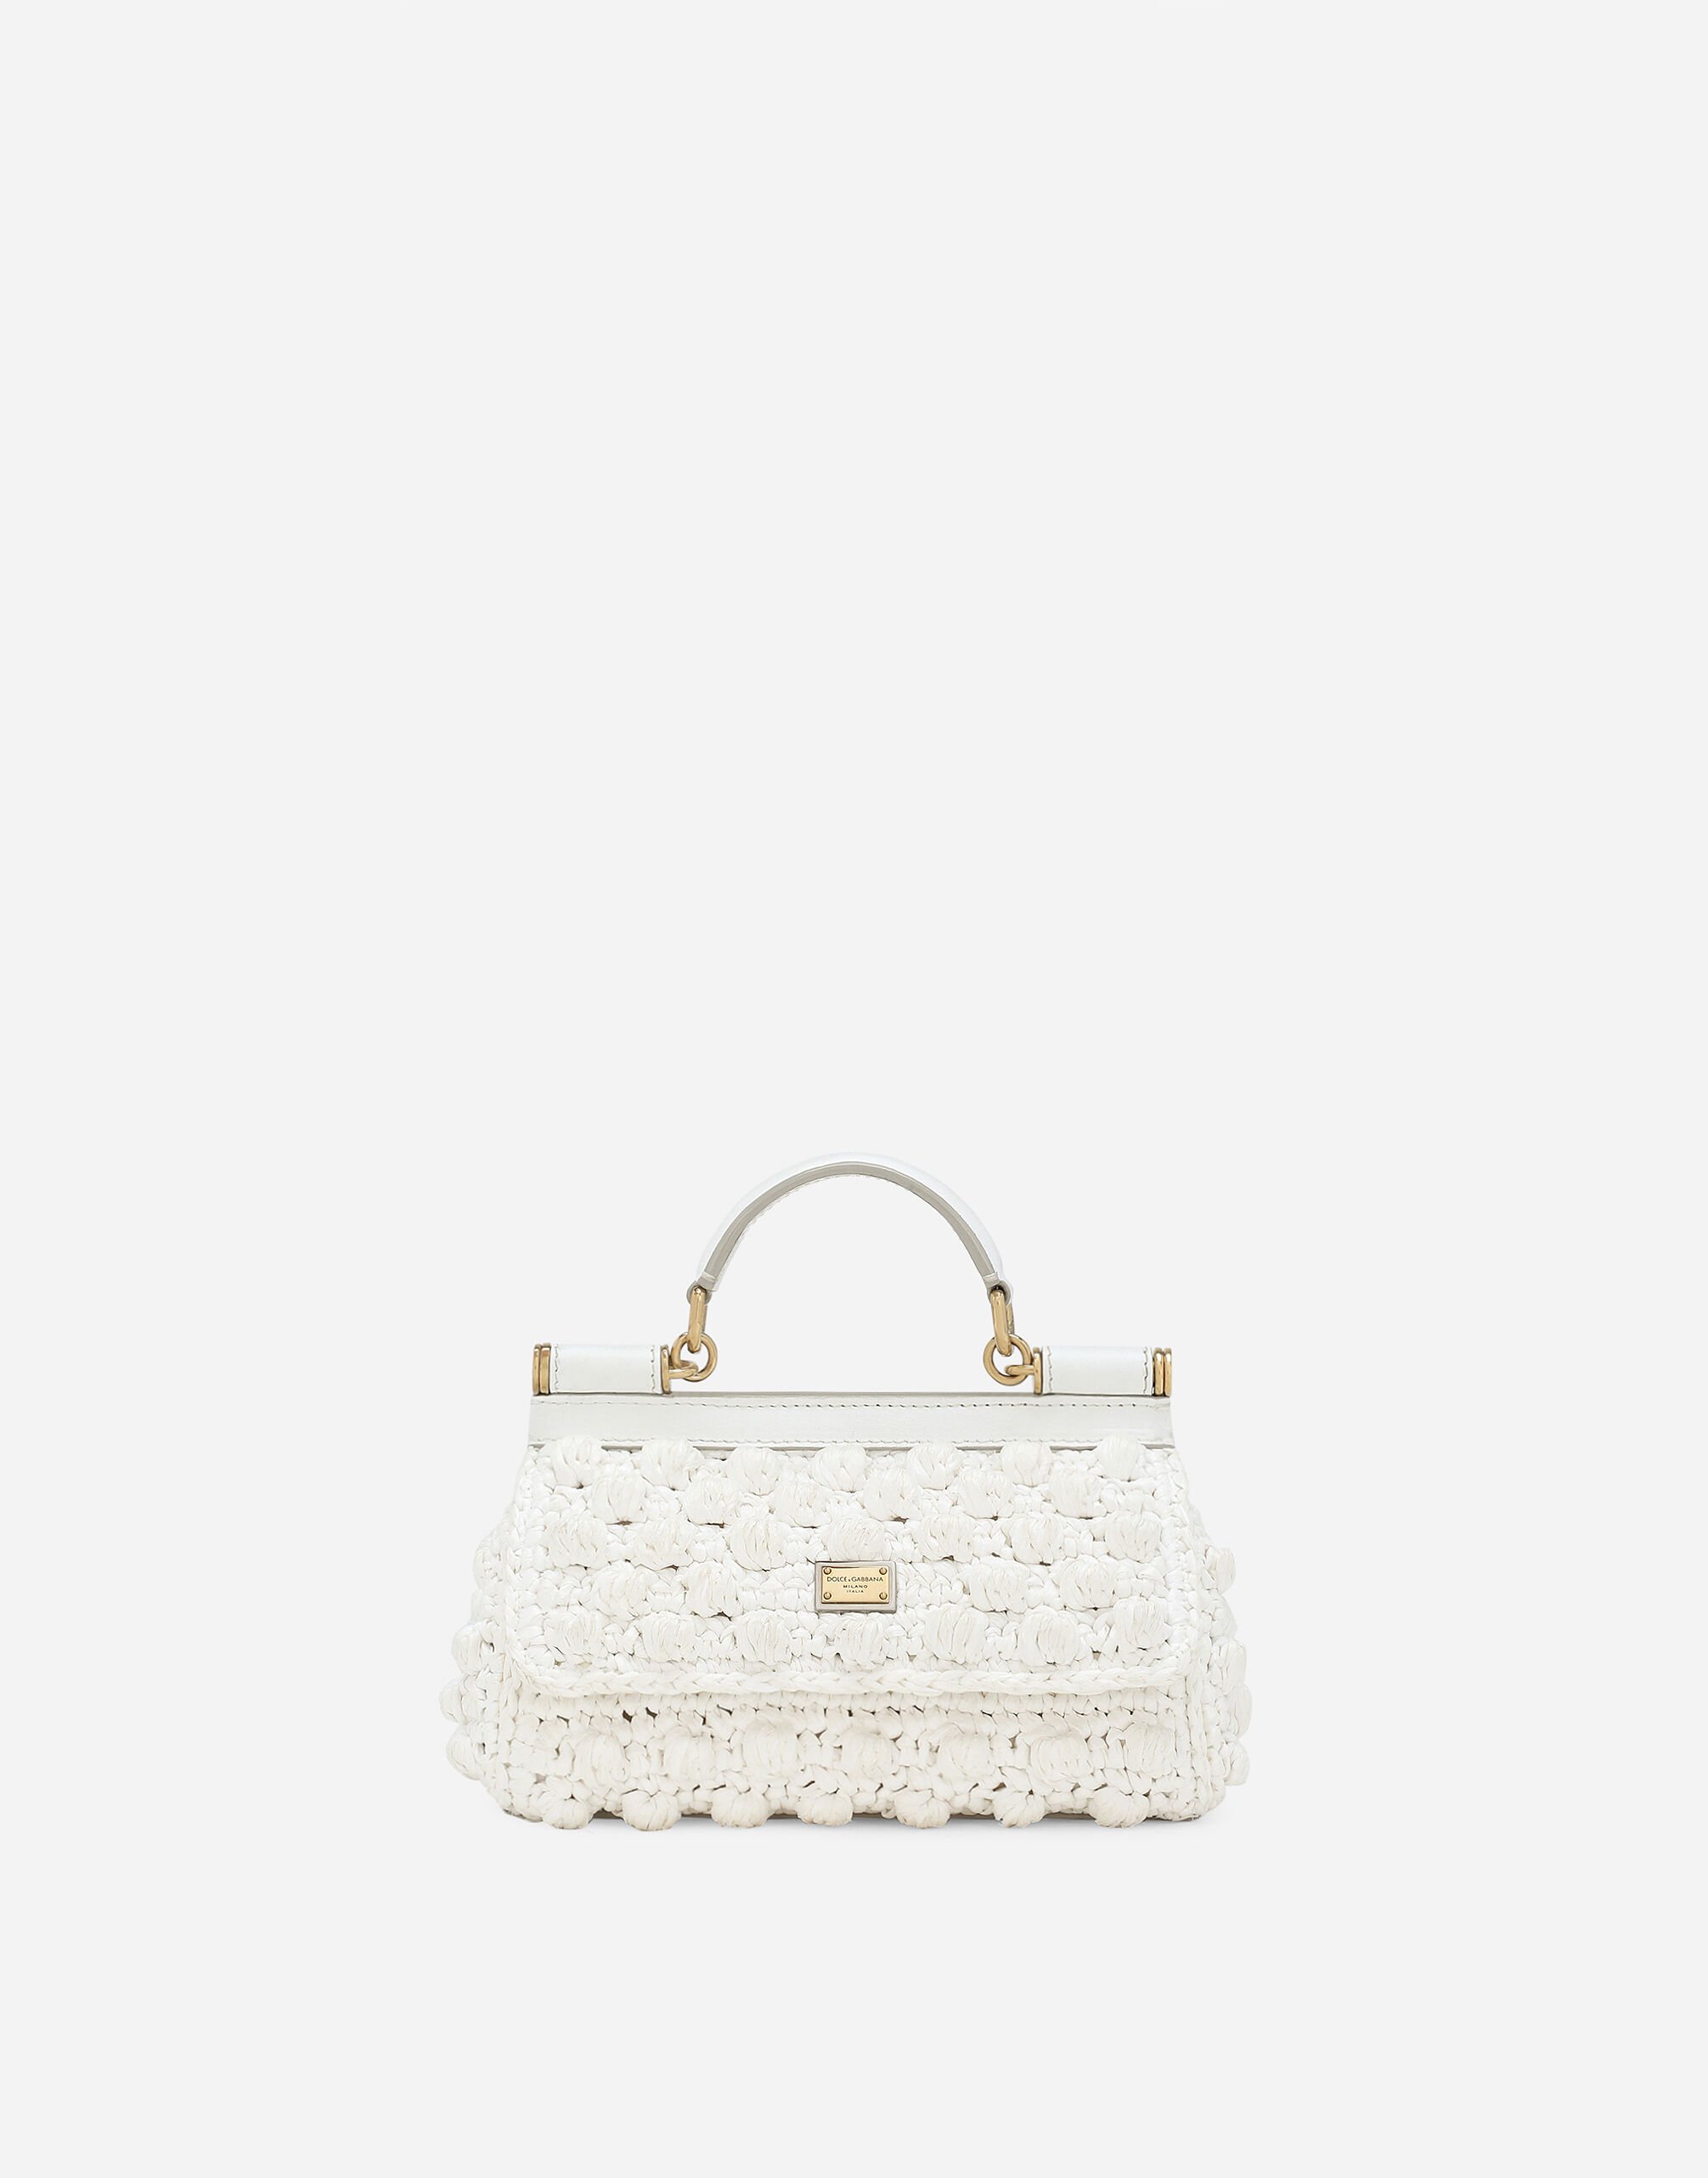 Dolce & Gabbana حقيبة سيسيلي كروشيه صغيرة من الرافية متعدد الألوان BB7655A4547